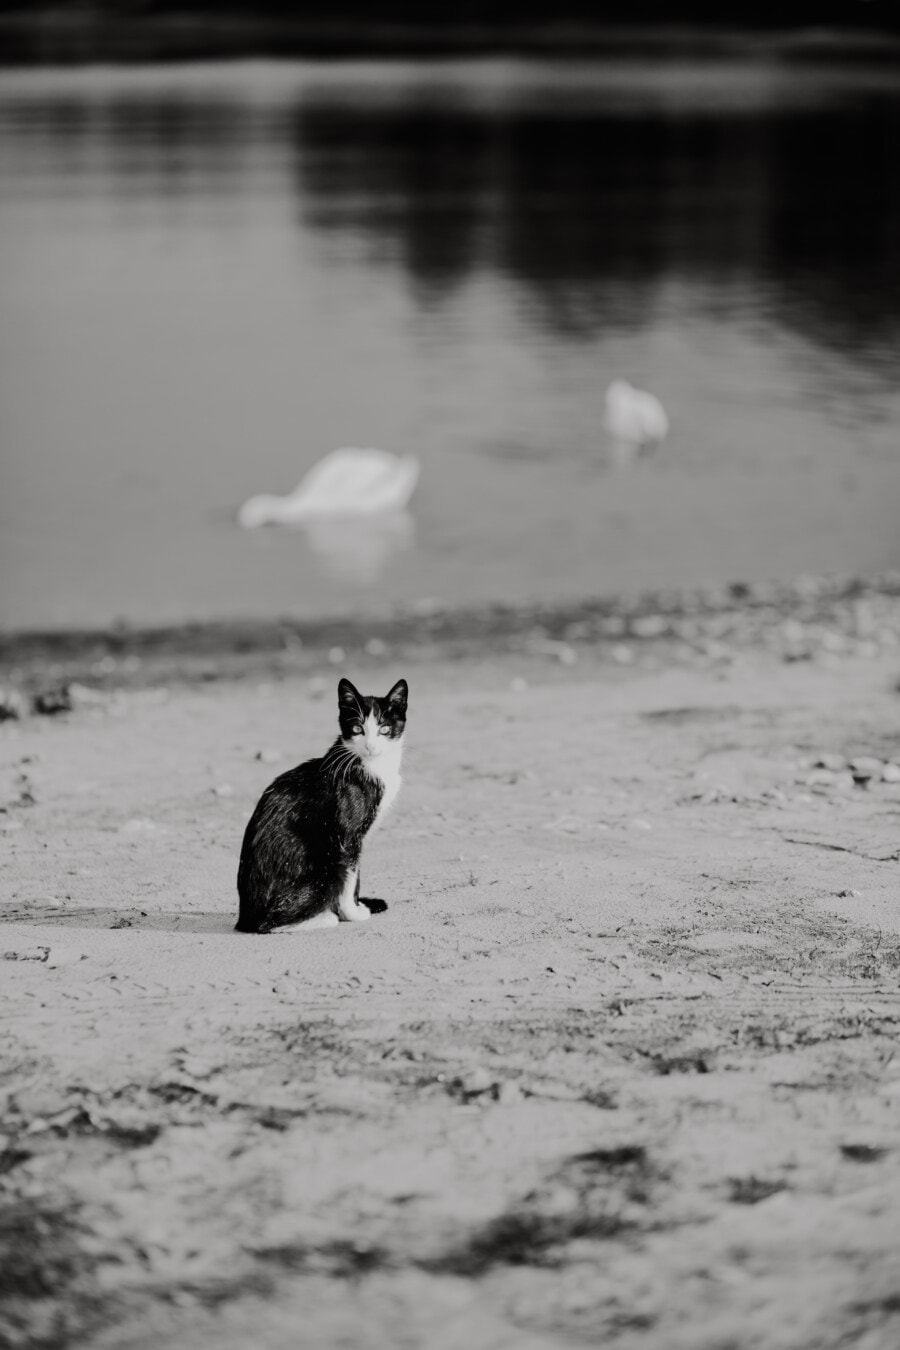 crno i bijelo, siva, crno-bijelo, obala rijeke, domaća mačka, pijesak, plaža, obala mora, voda, životinja